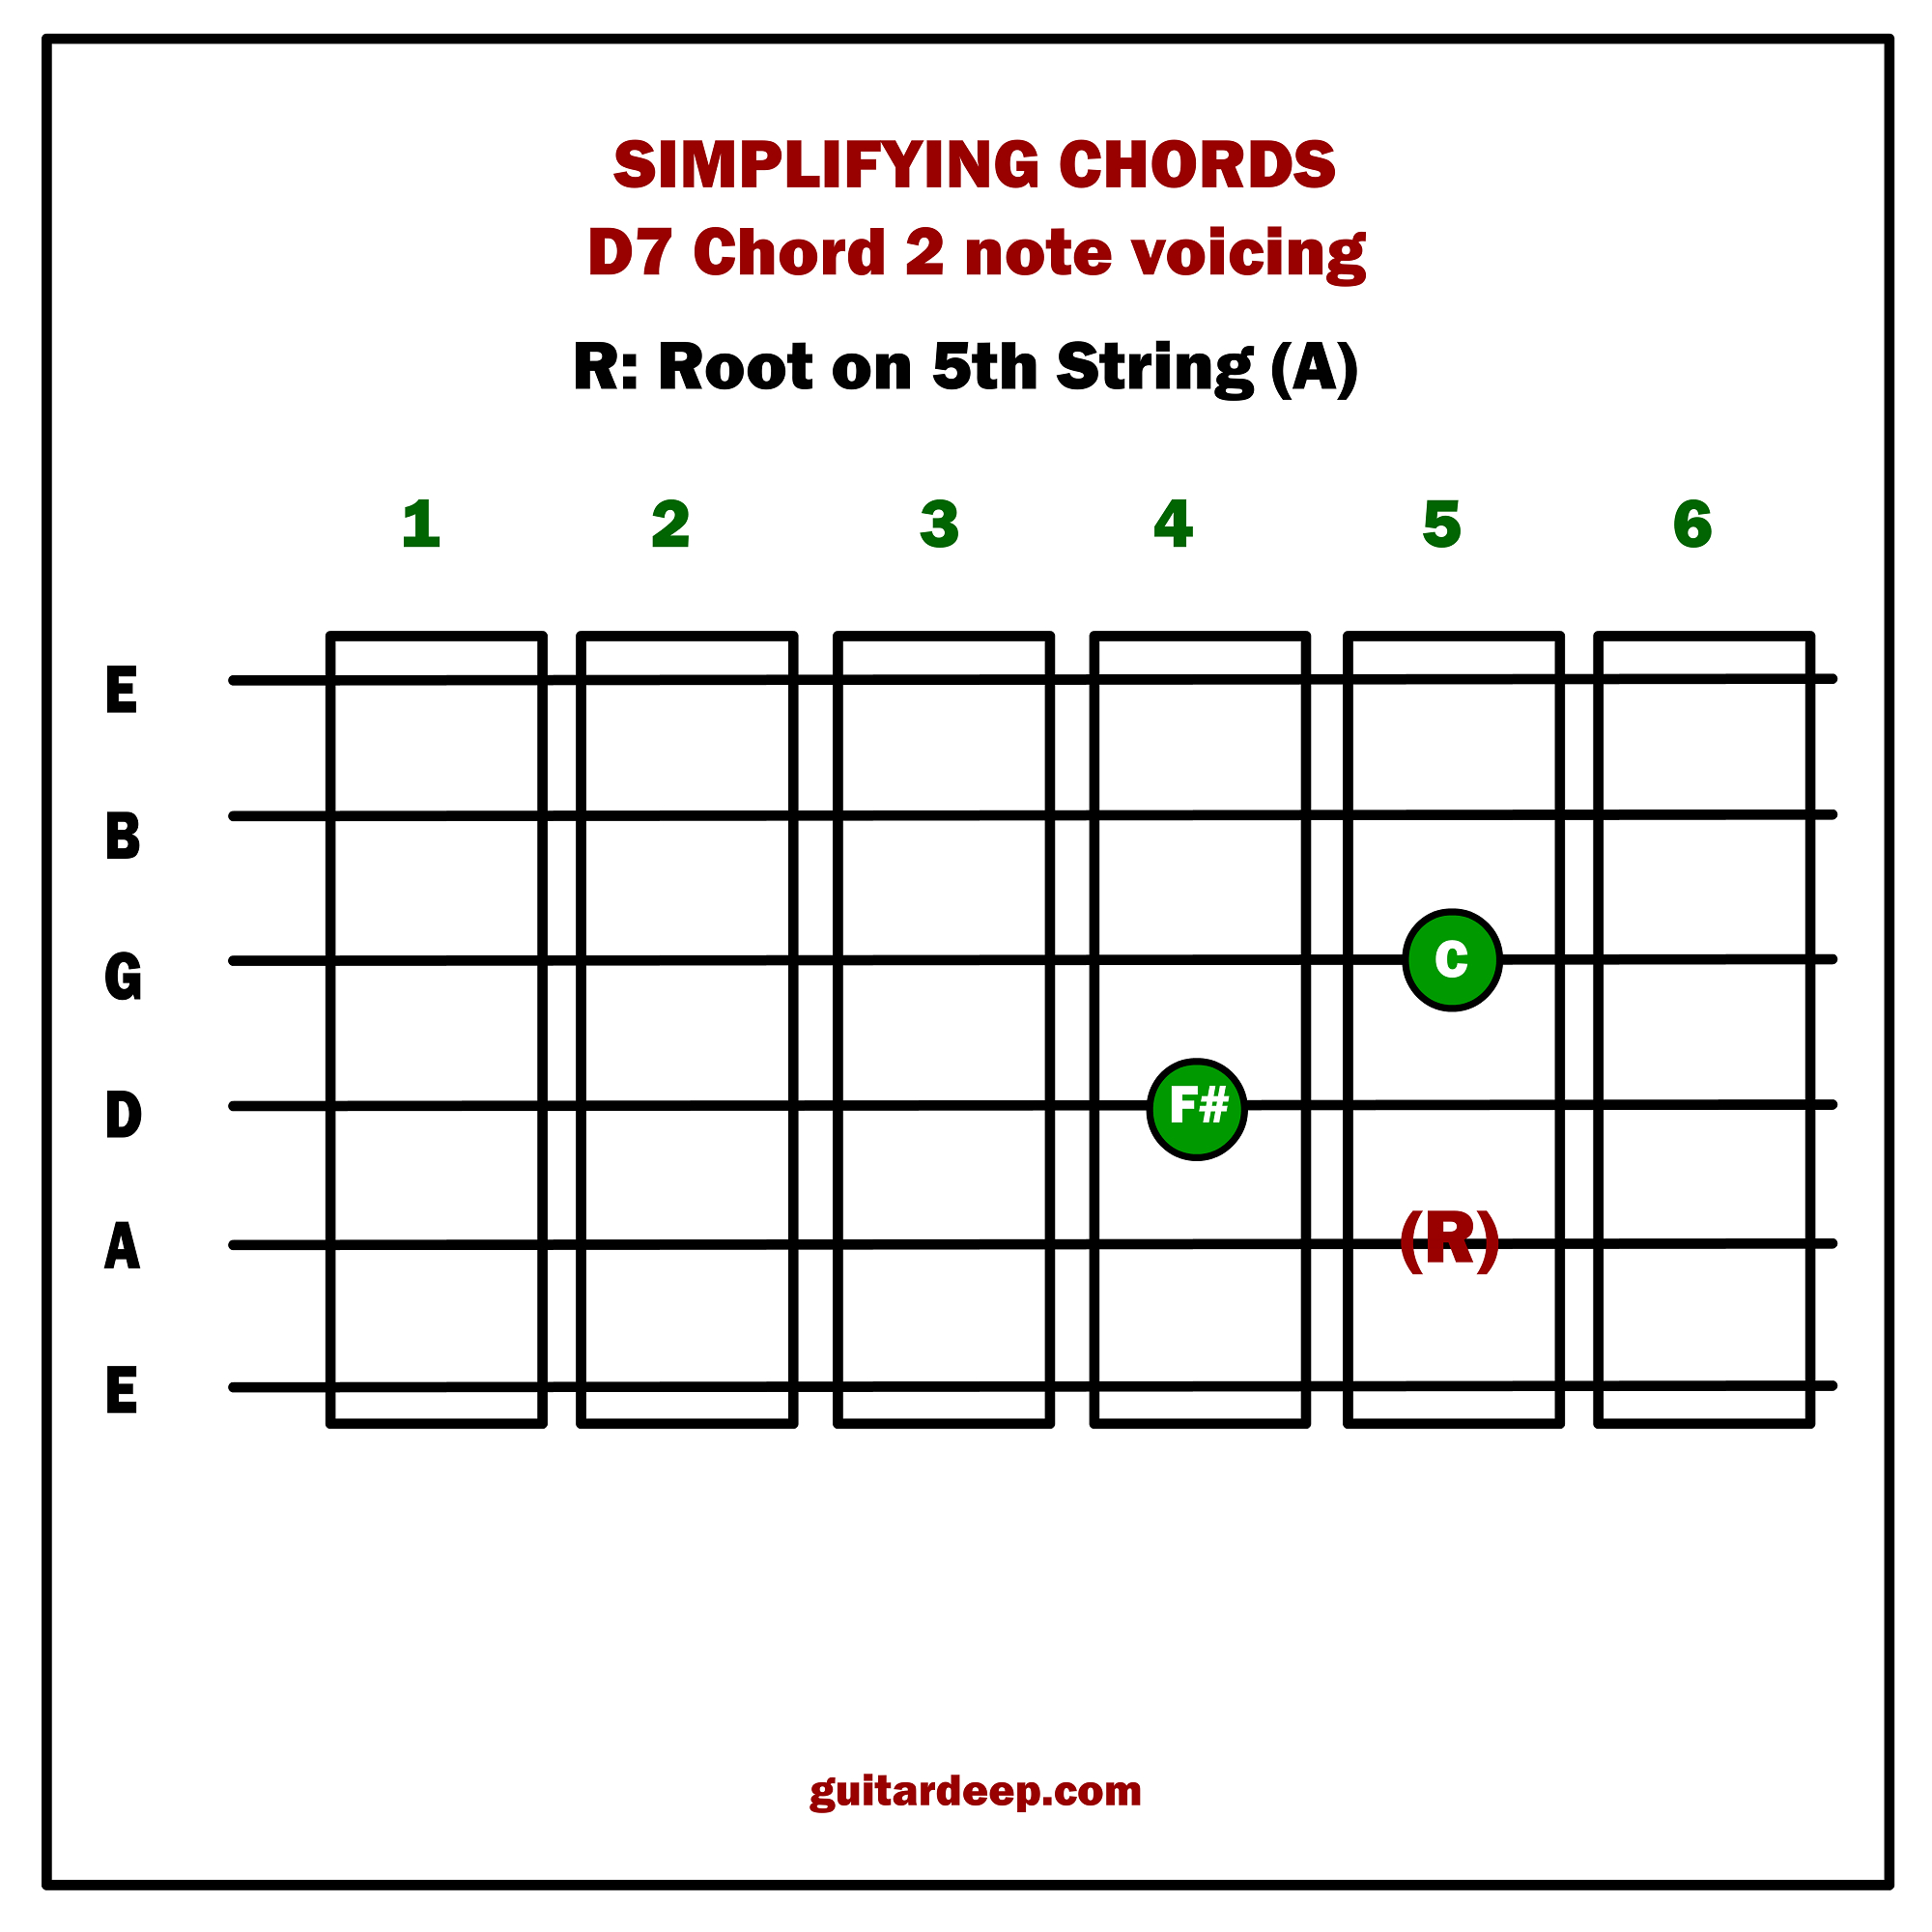 Dm7 Guitar Chord Lesson 07 Simplifying Guitar Chords Part 02 Guitar Deep